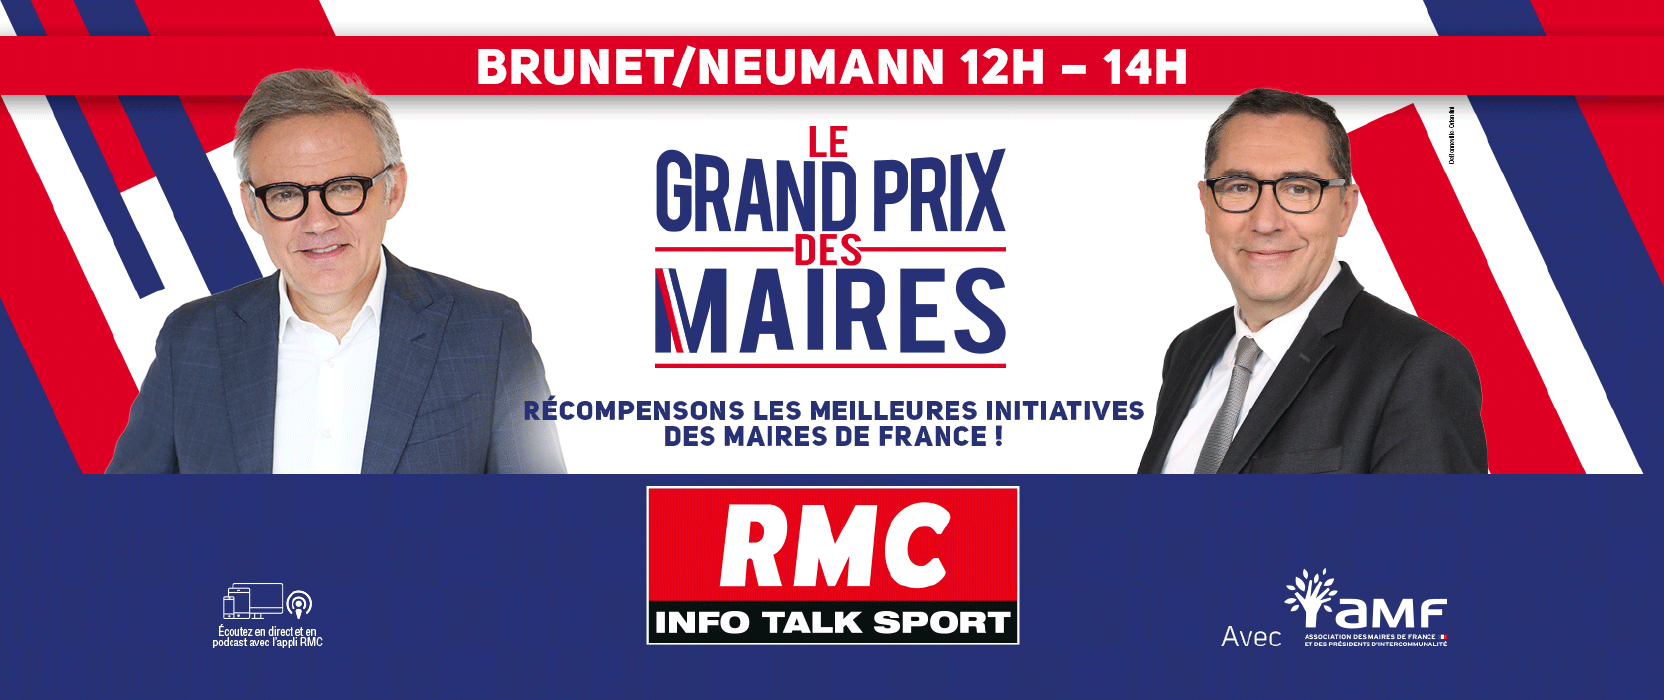 RMC lance la 2e édition du "Grand Prix des Maires"